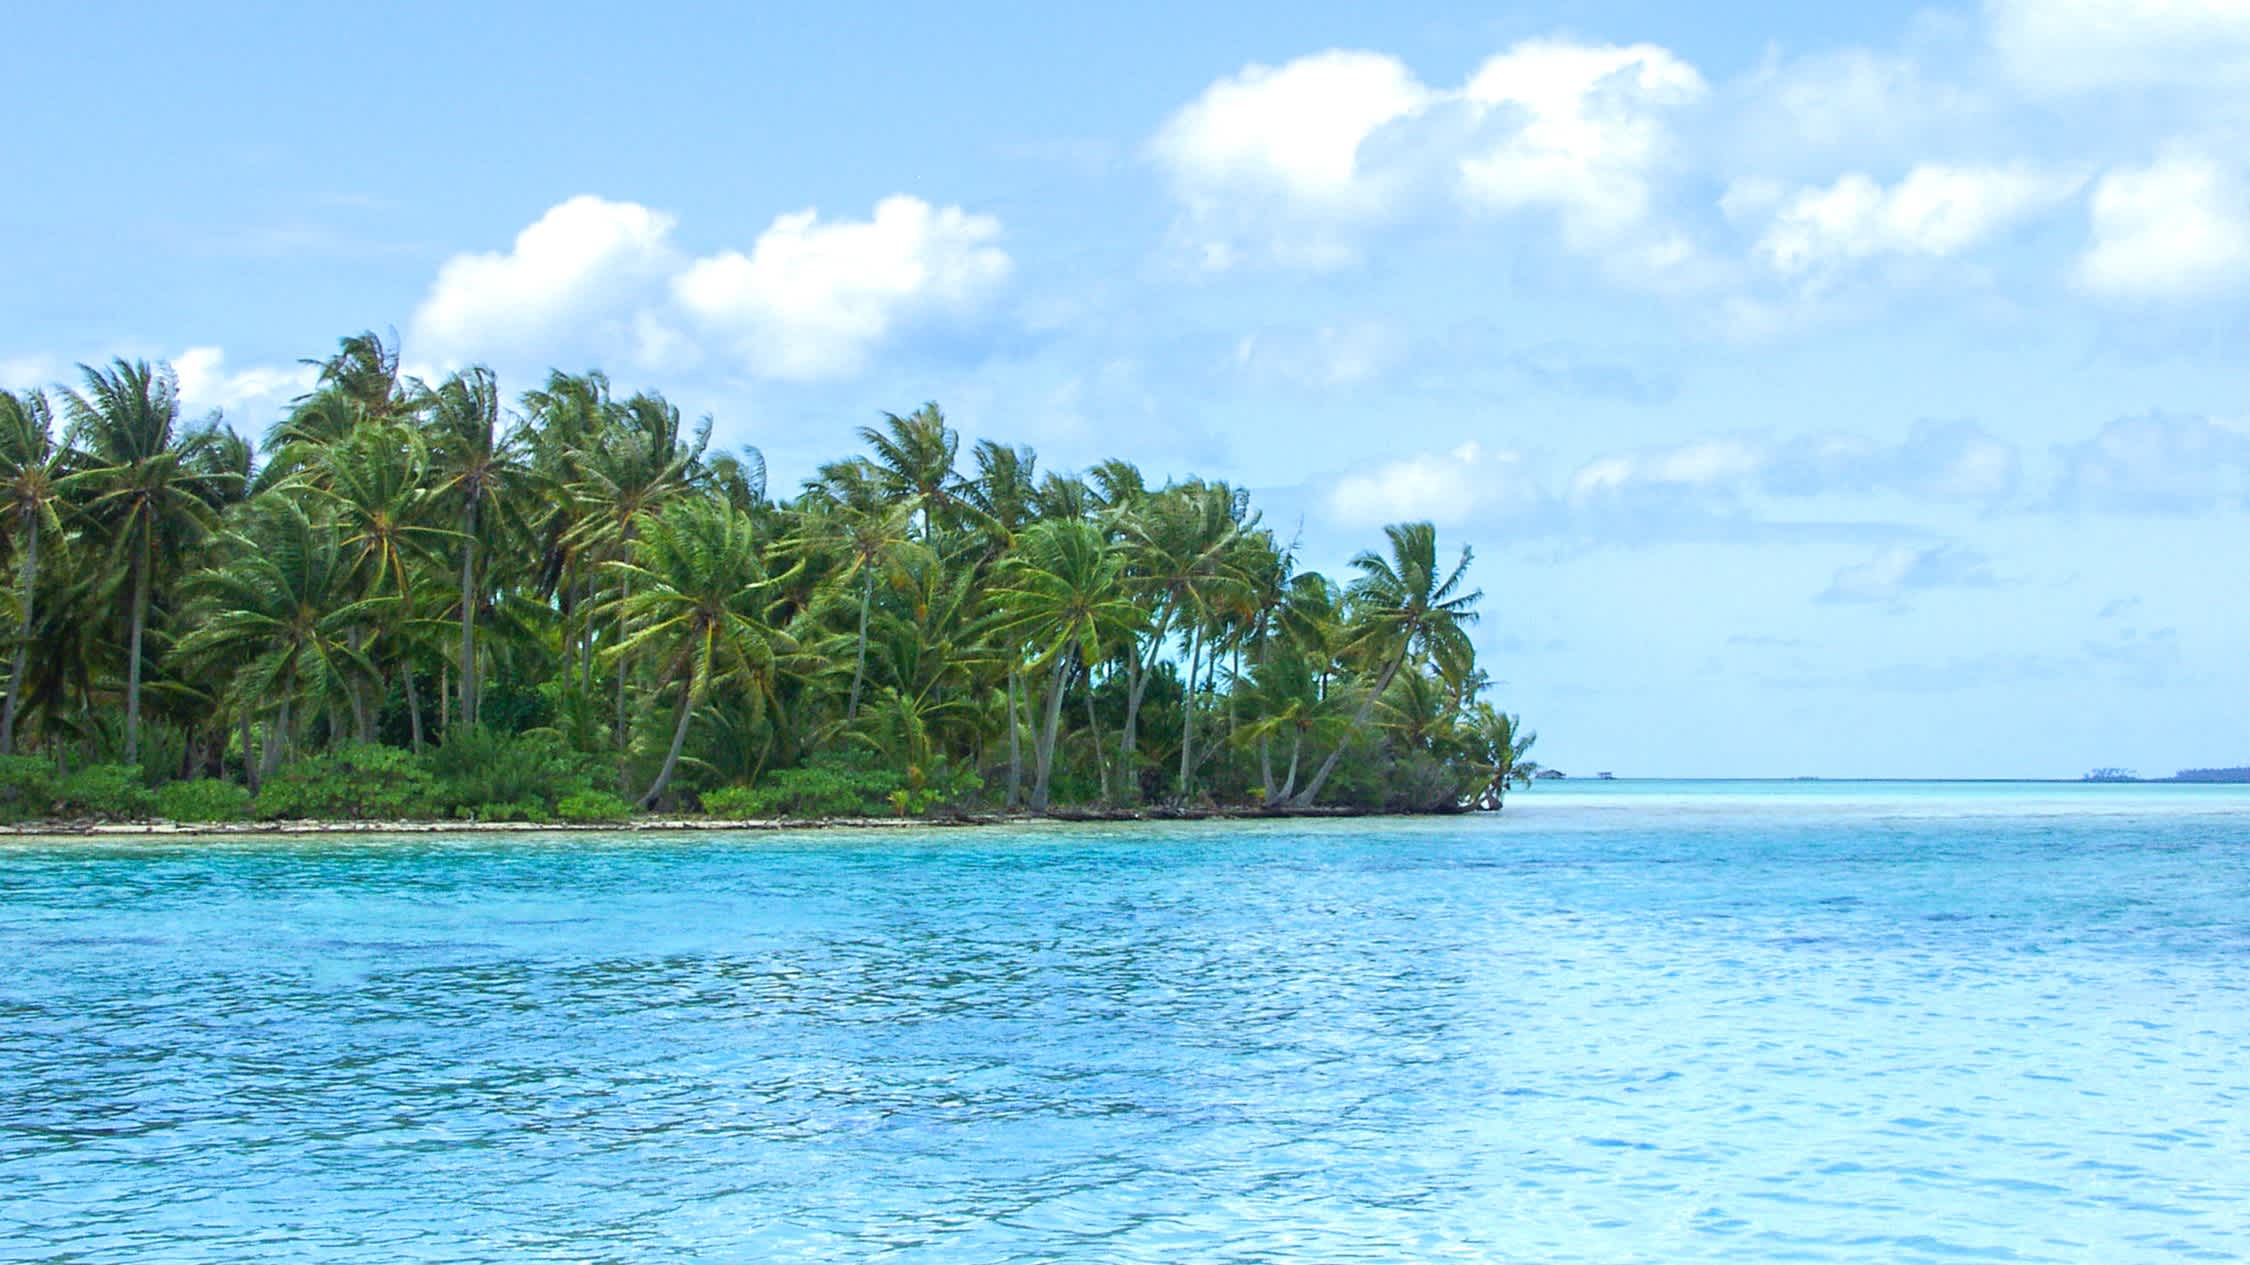 Blick auf die private Insel in Französisch-Polynesien

